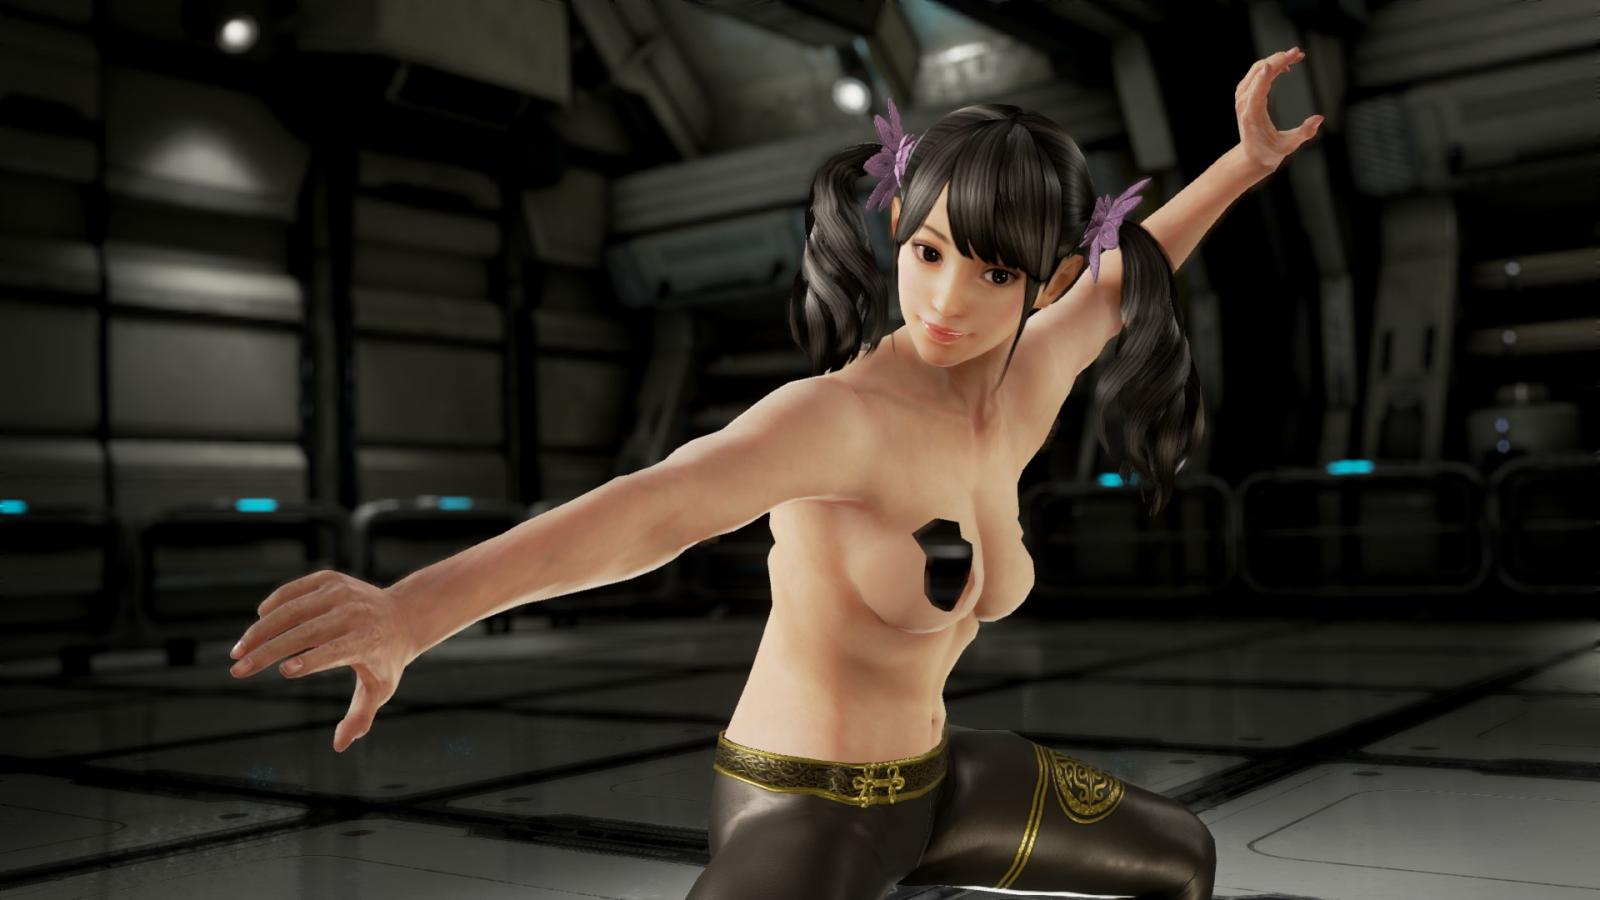 Sex Tekken 7 Girl Characters porn images tekken nude mods adult gaming love...